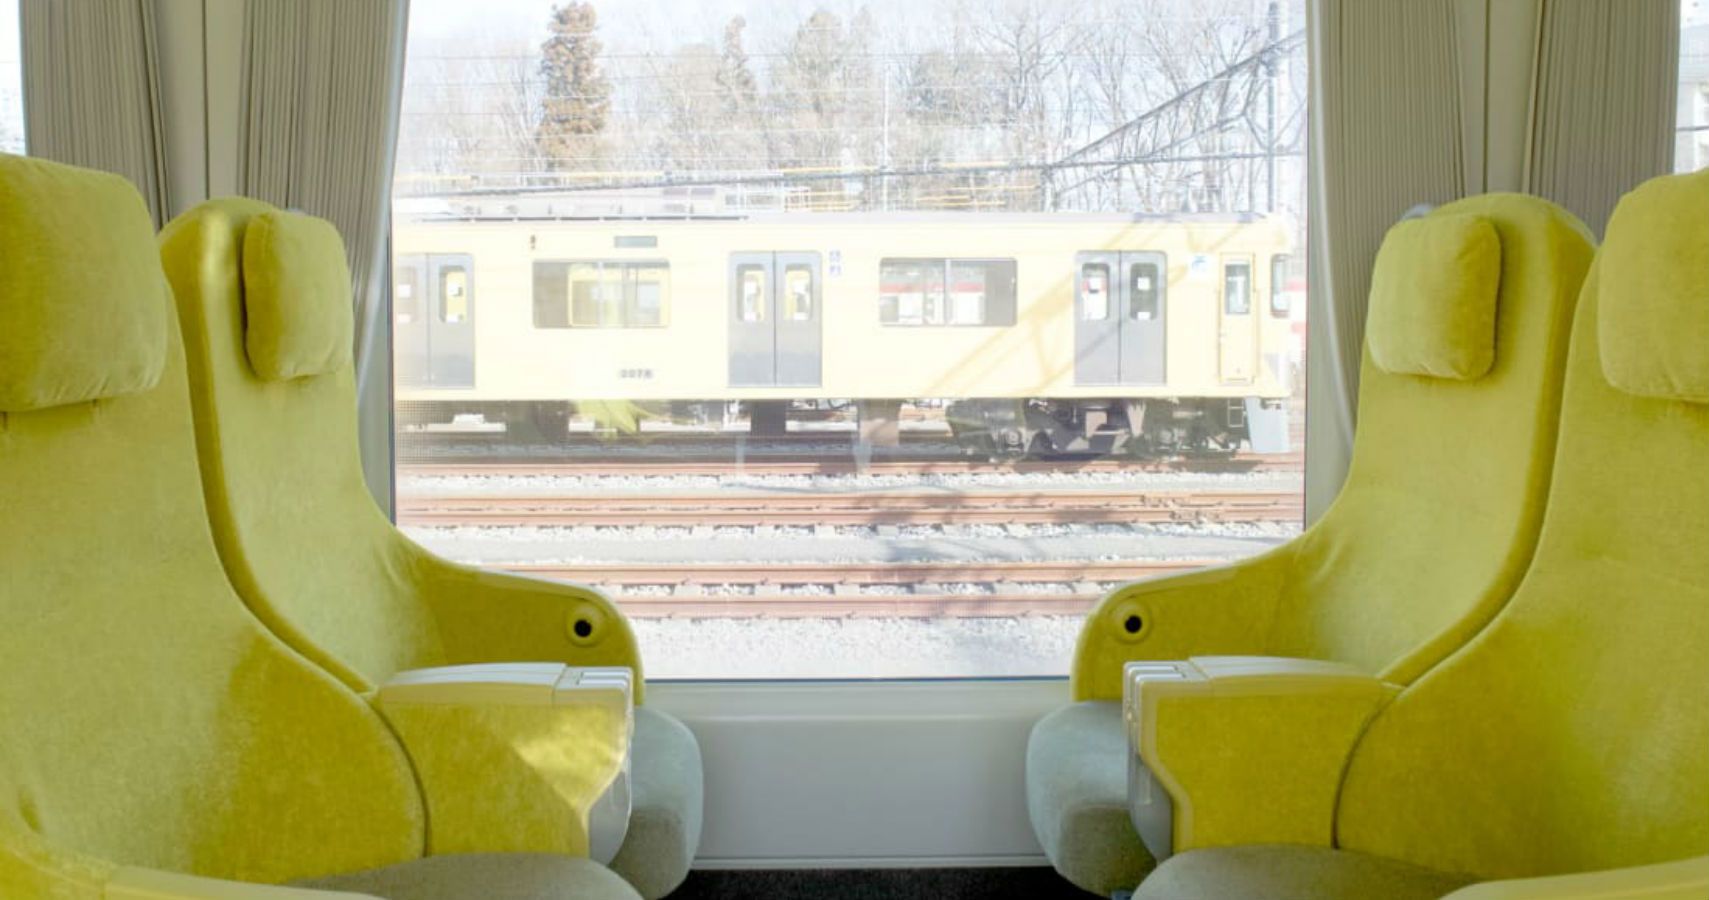 1672775092 762 Trem de Toquio visa fazer com que os passageiros sintam